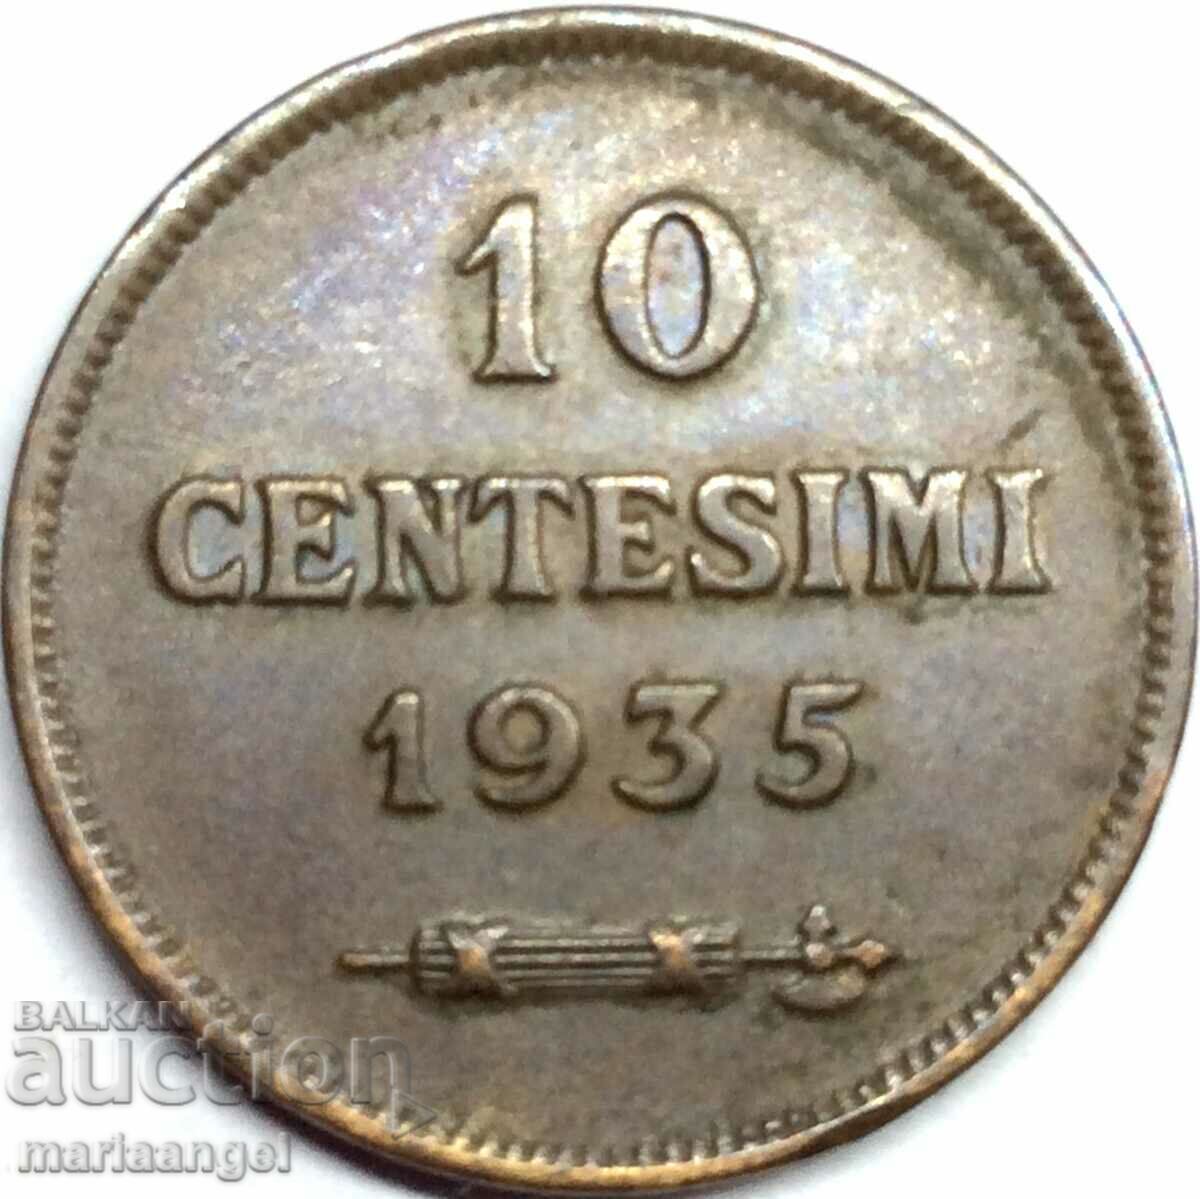 San Marino 1935 10 centesimi